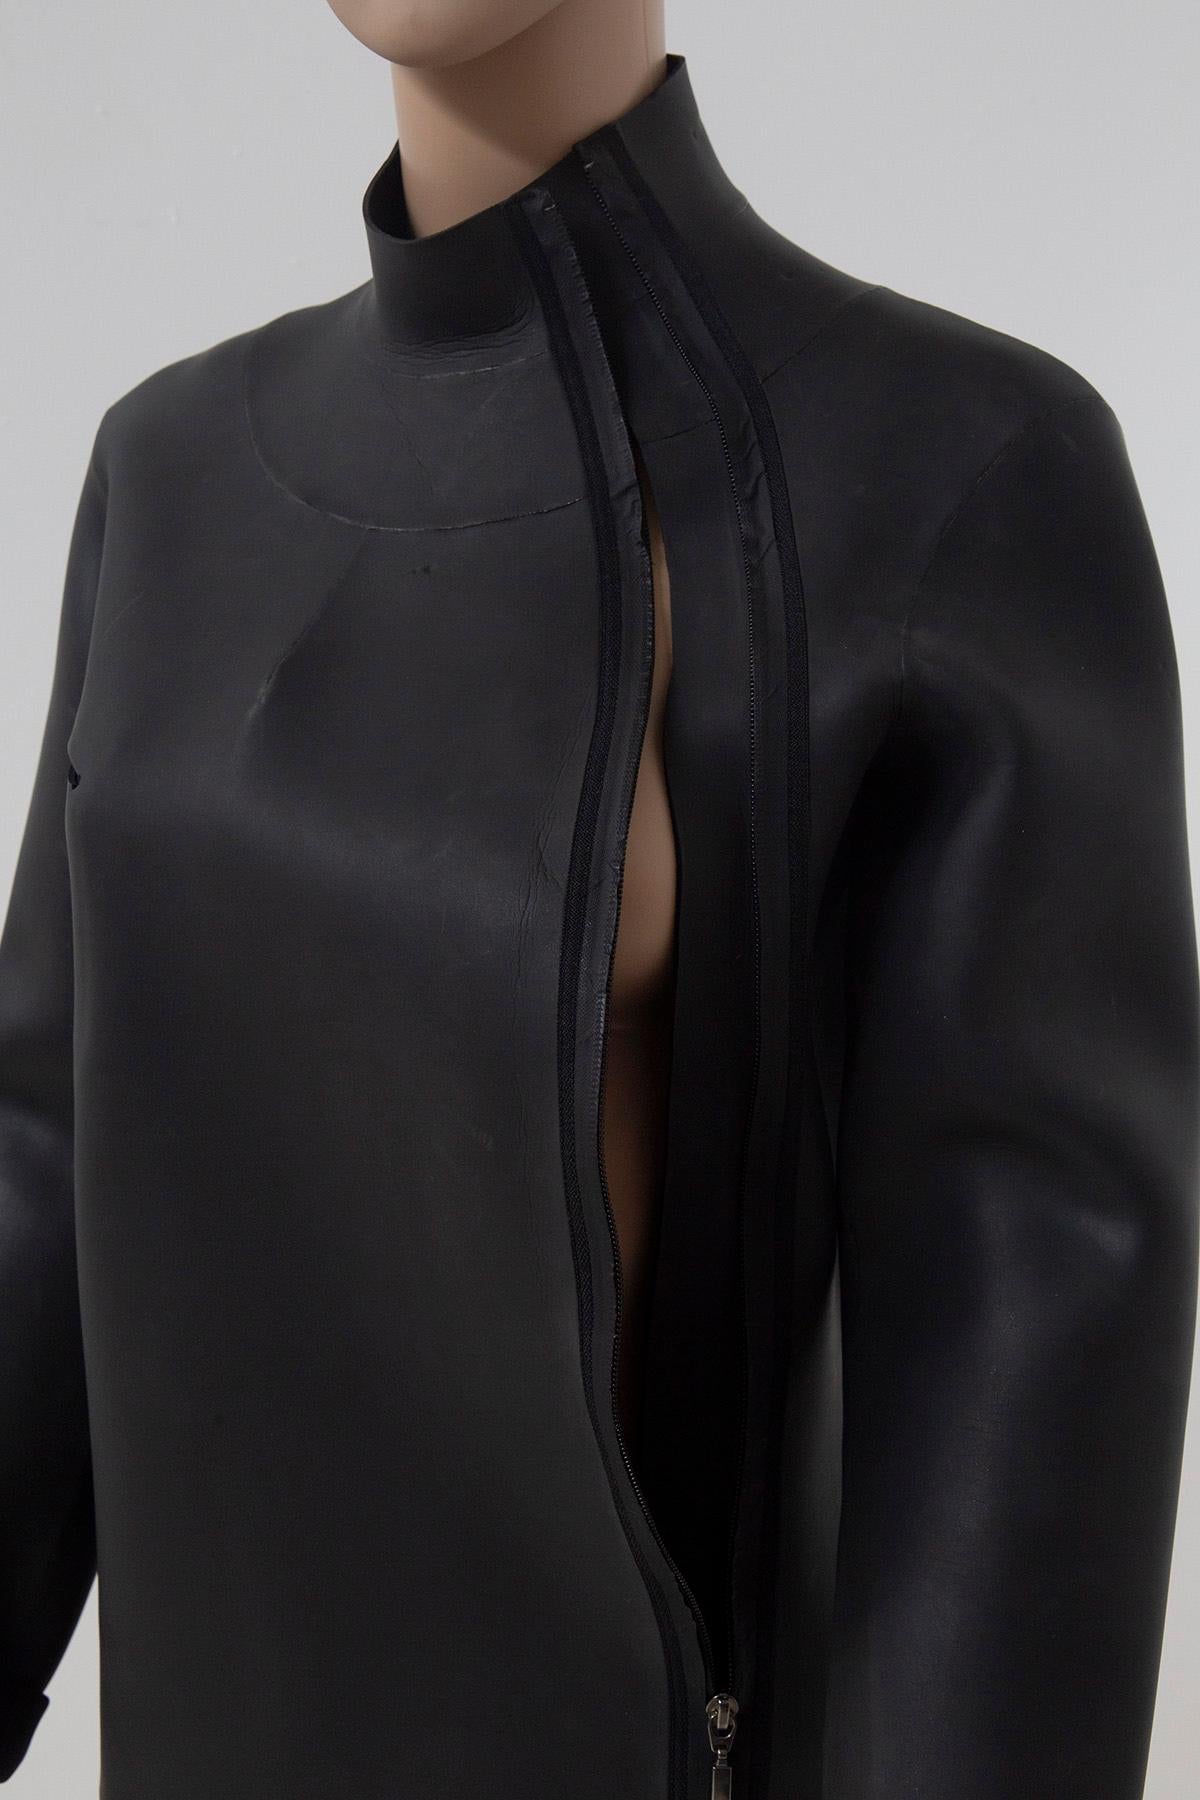 Jean Paul Gaultier modern suba/rubberized jacket For Sale 6